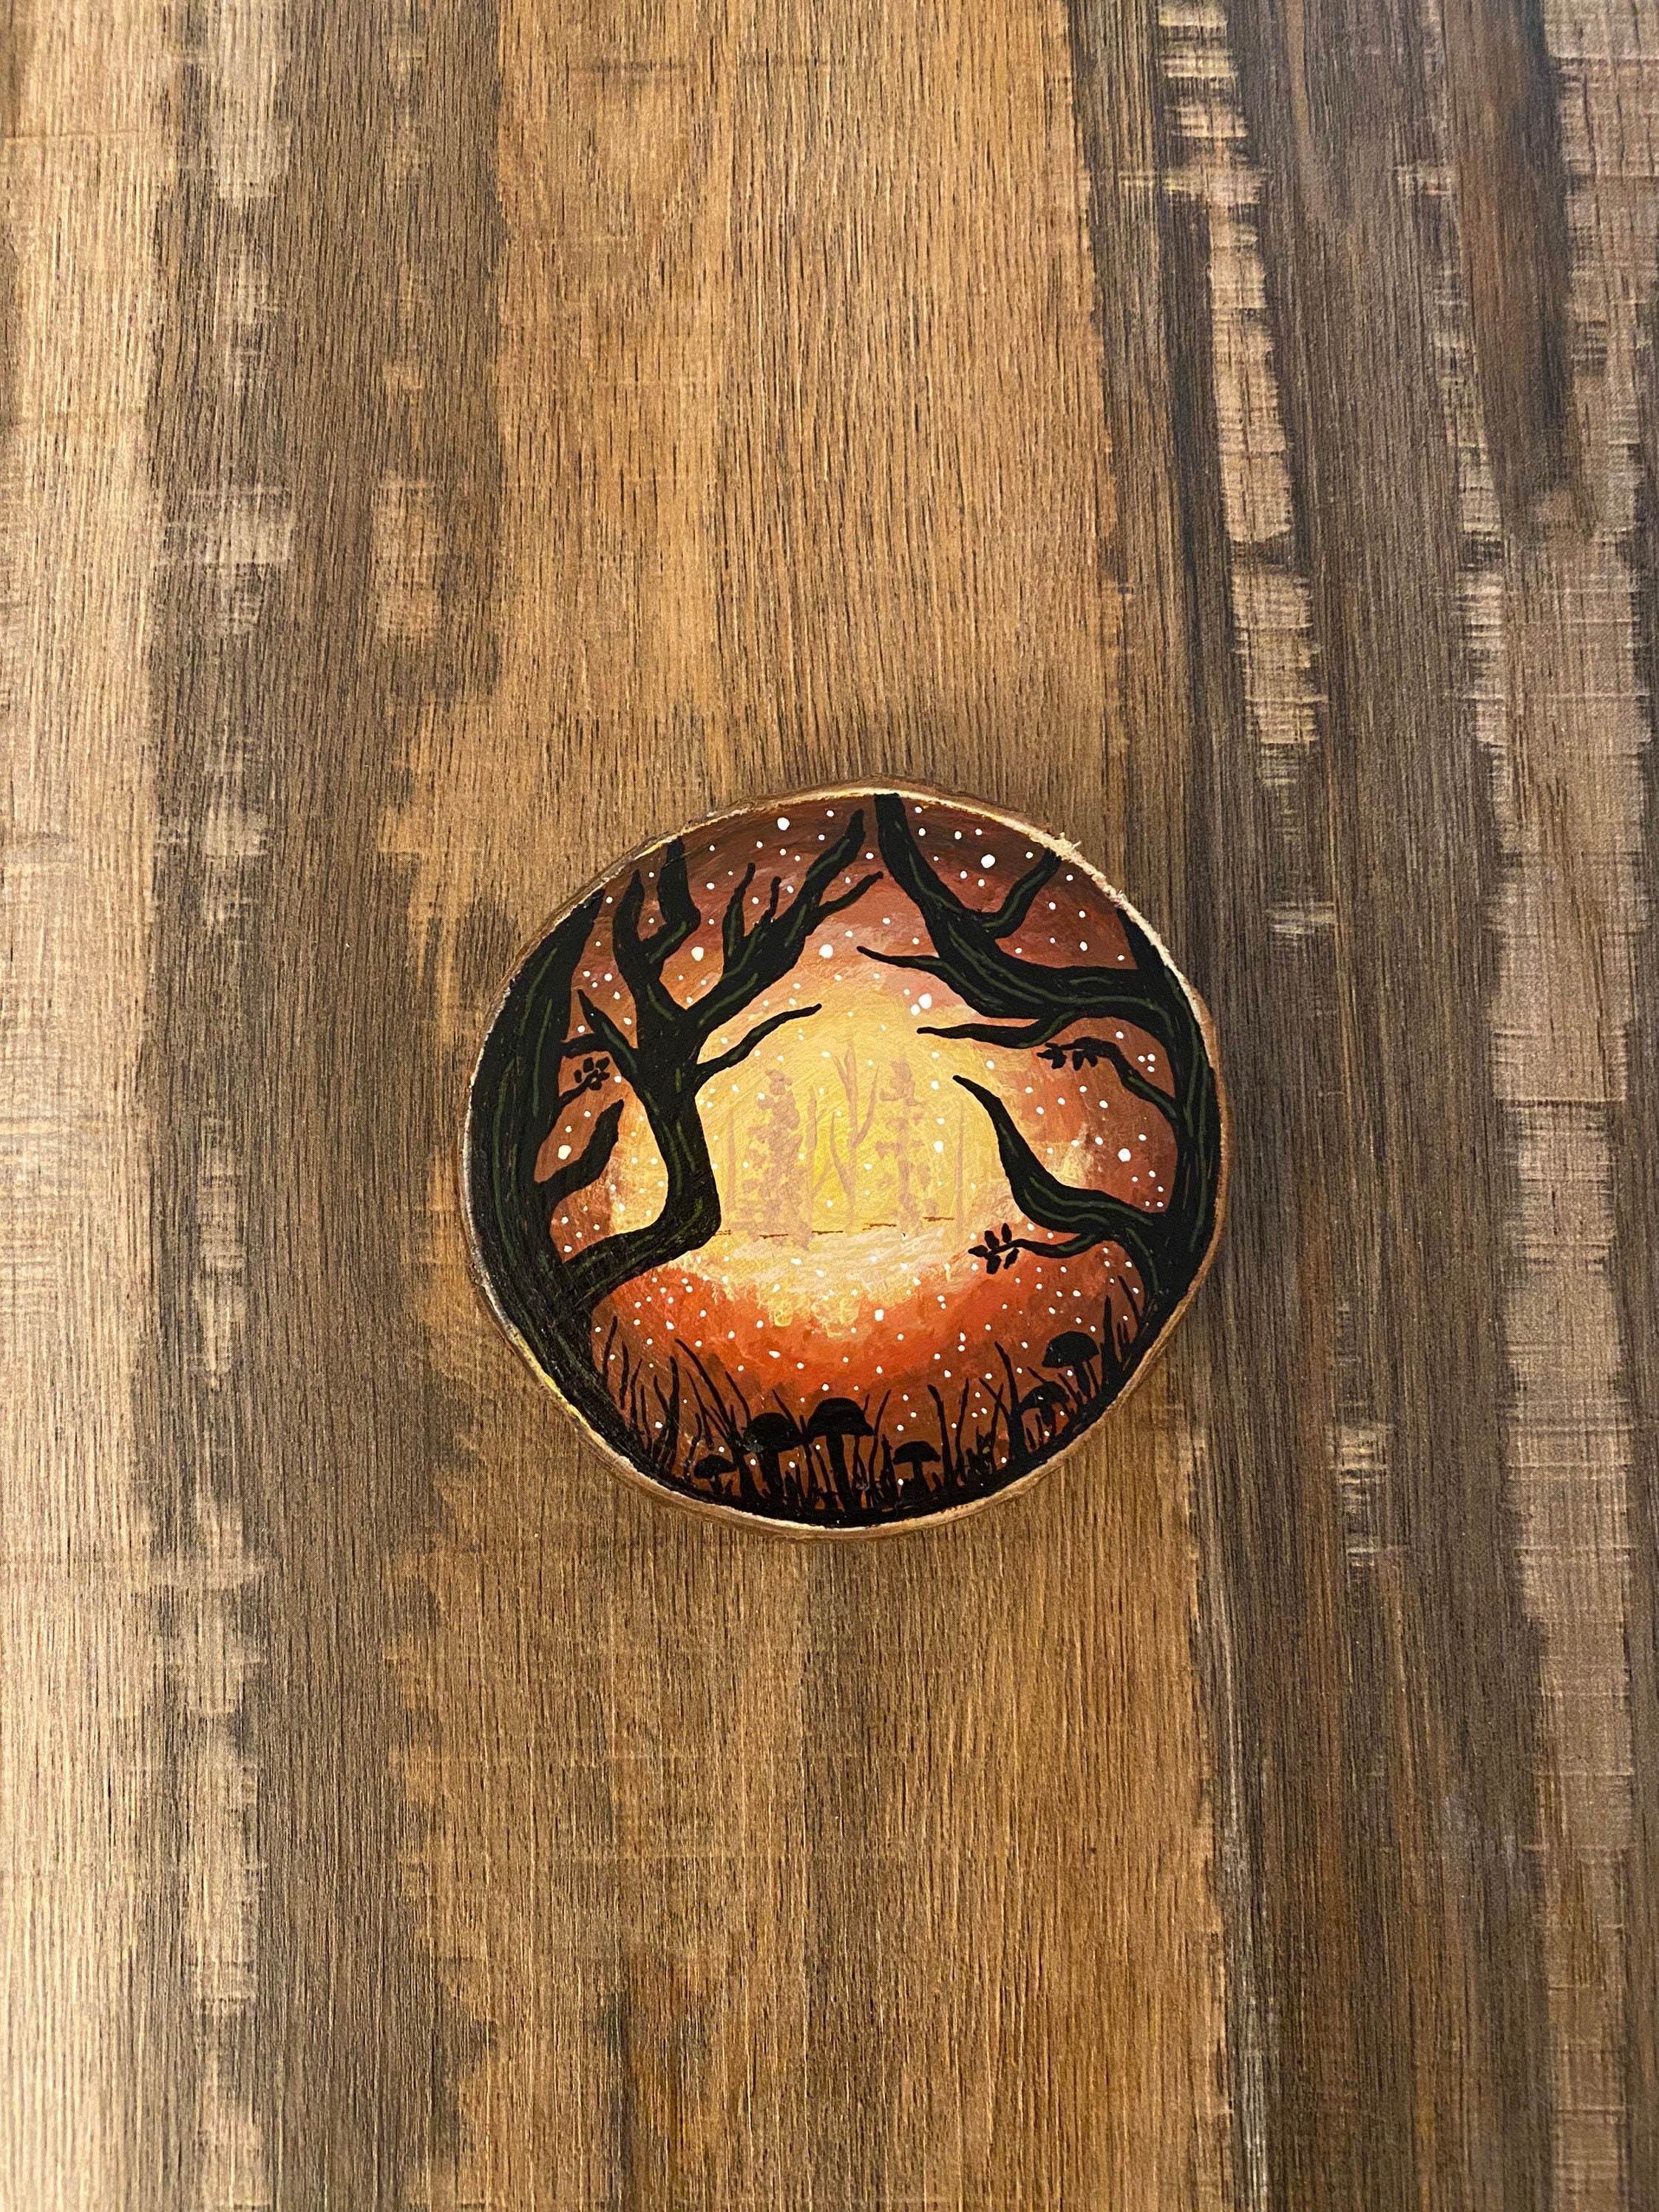 Bohemian Wood Burned Rustic Coasters set of 2 